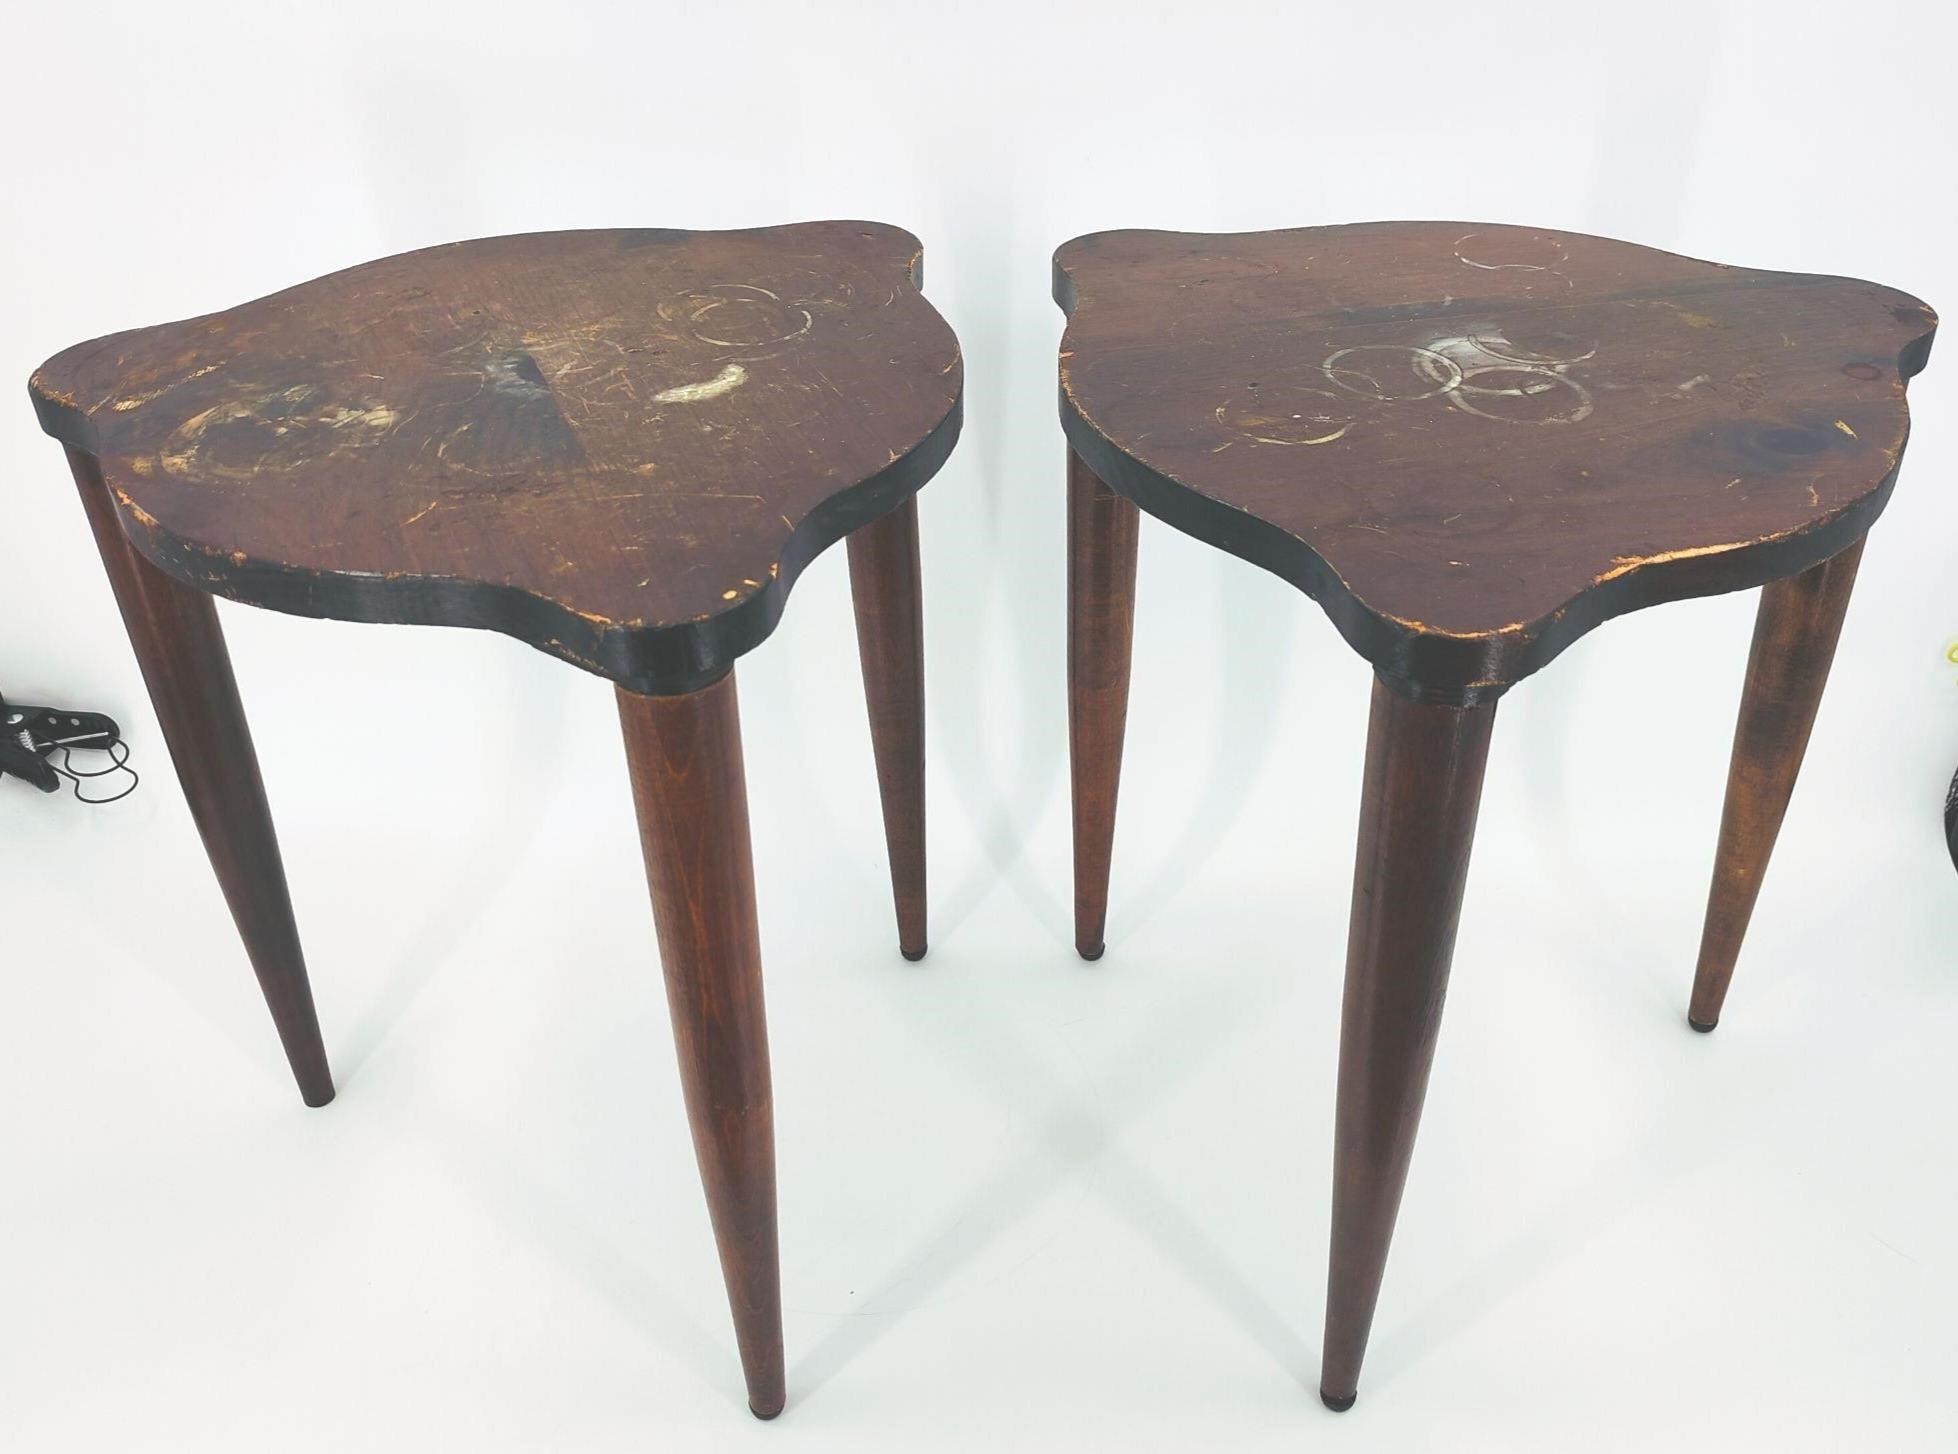 Vintage Side tables for Refurbishing